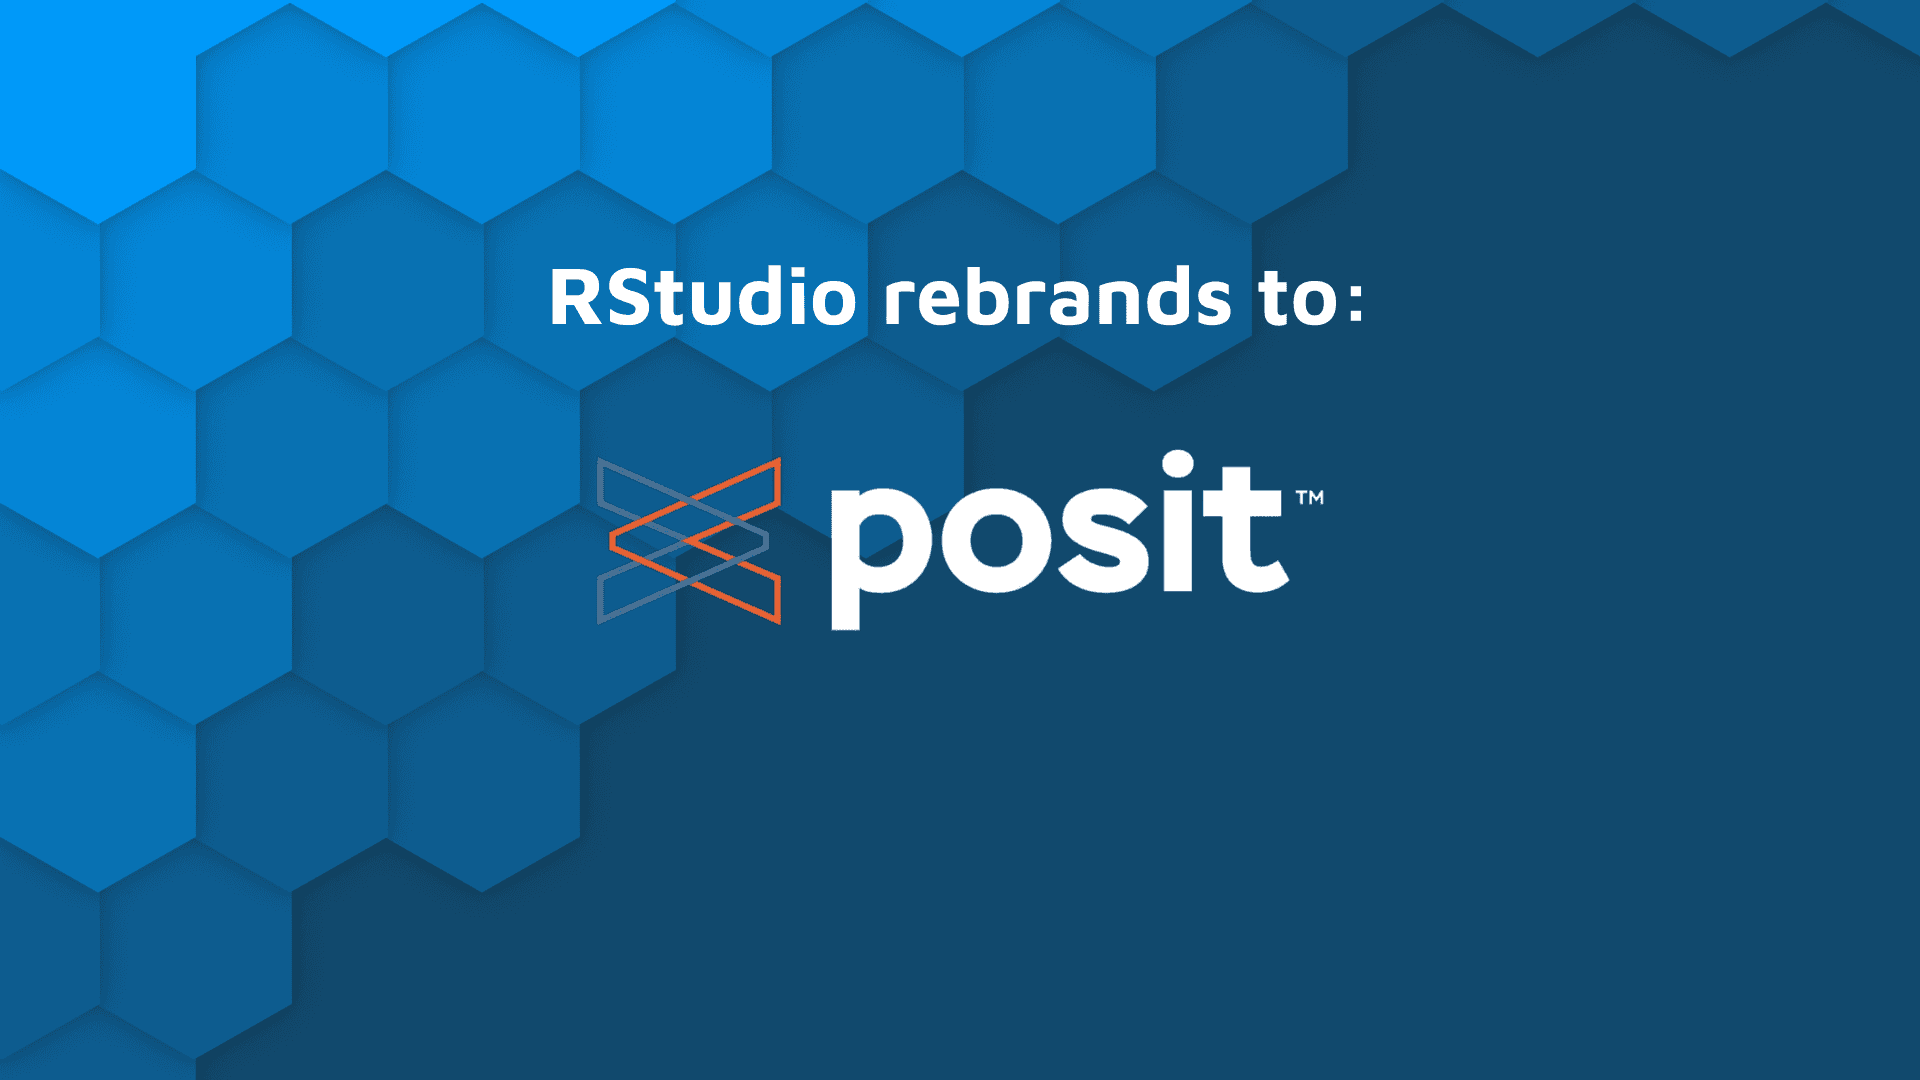 RStudio rebrand, name change to Posit